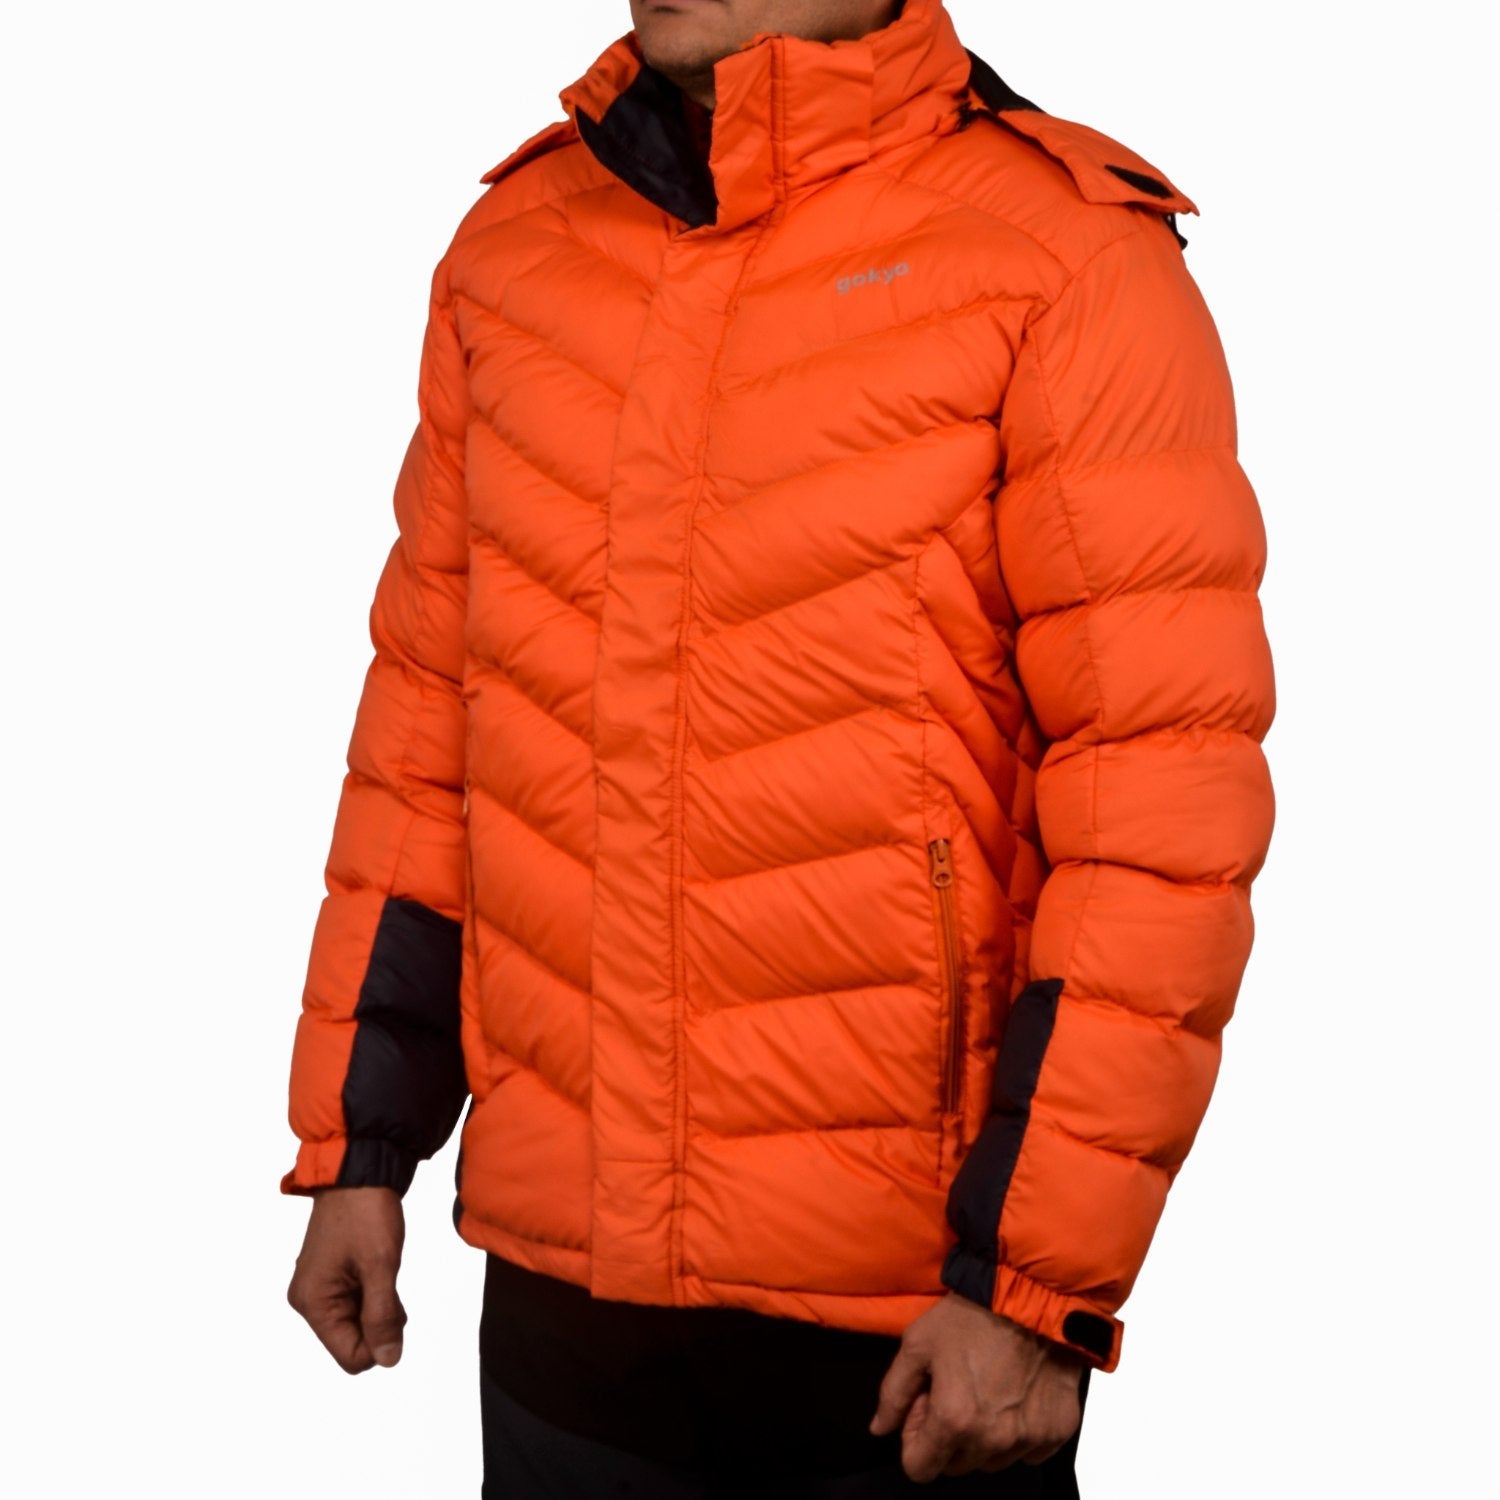 Buy K2 Survivor Down Jacket at Gokyo Outdoor Clothing & Gear